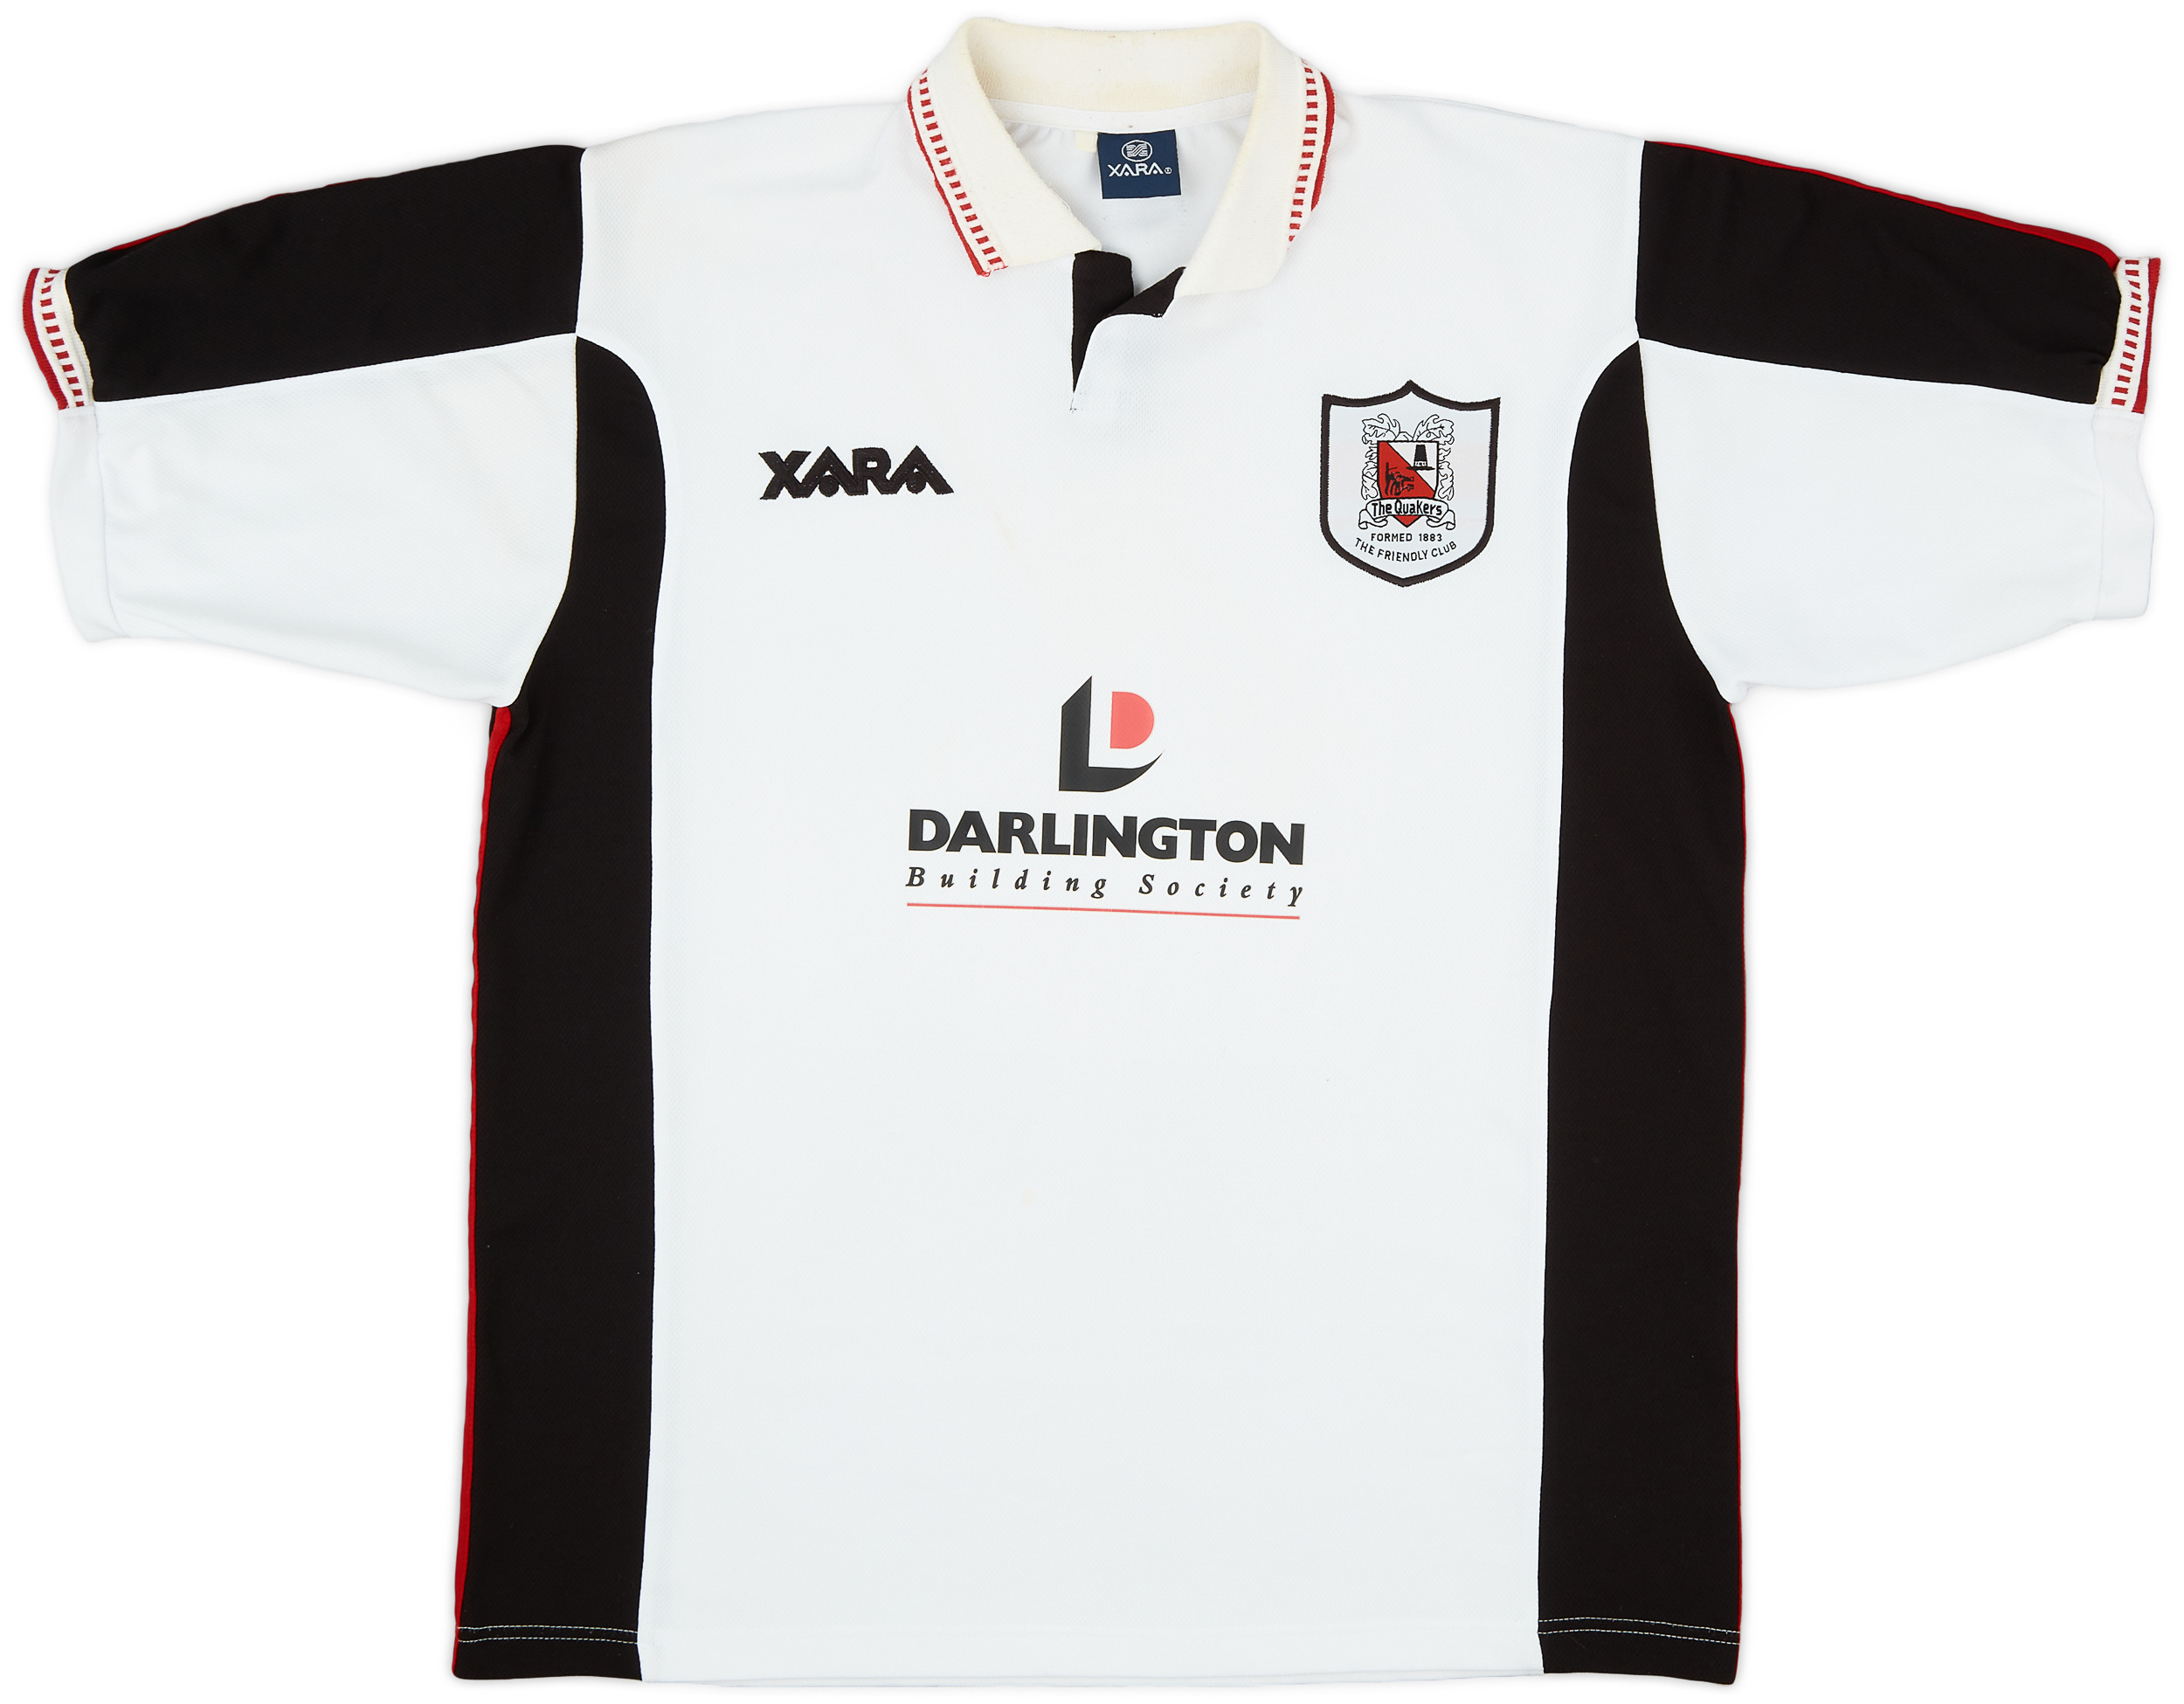 Darlington  home camisa (Original)